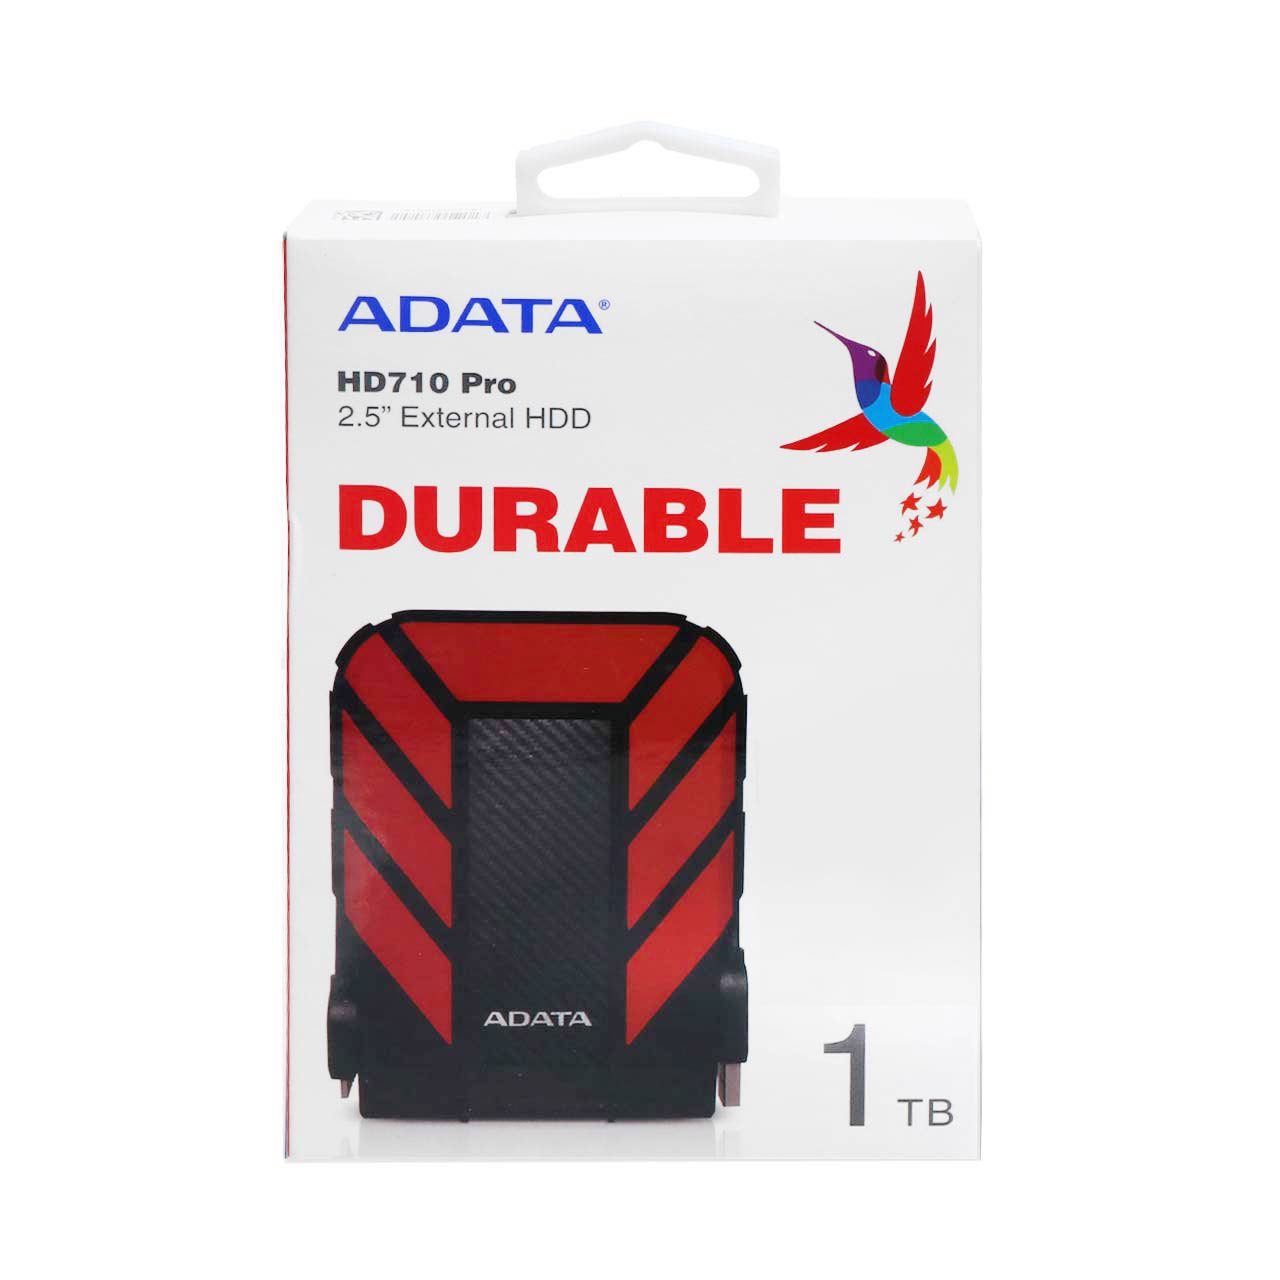 هارد اکسترنال ADATA مدل Durable HD710 Pro ظرفیت 1TB - قرمز (گارانتی شرکت آونگ